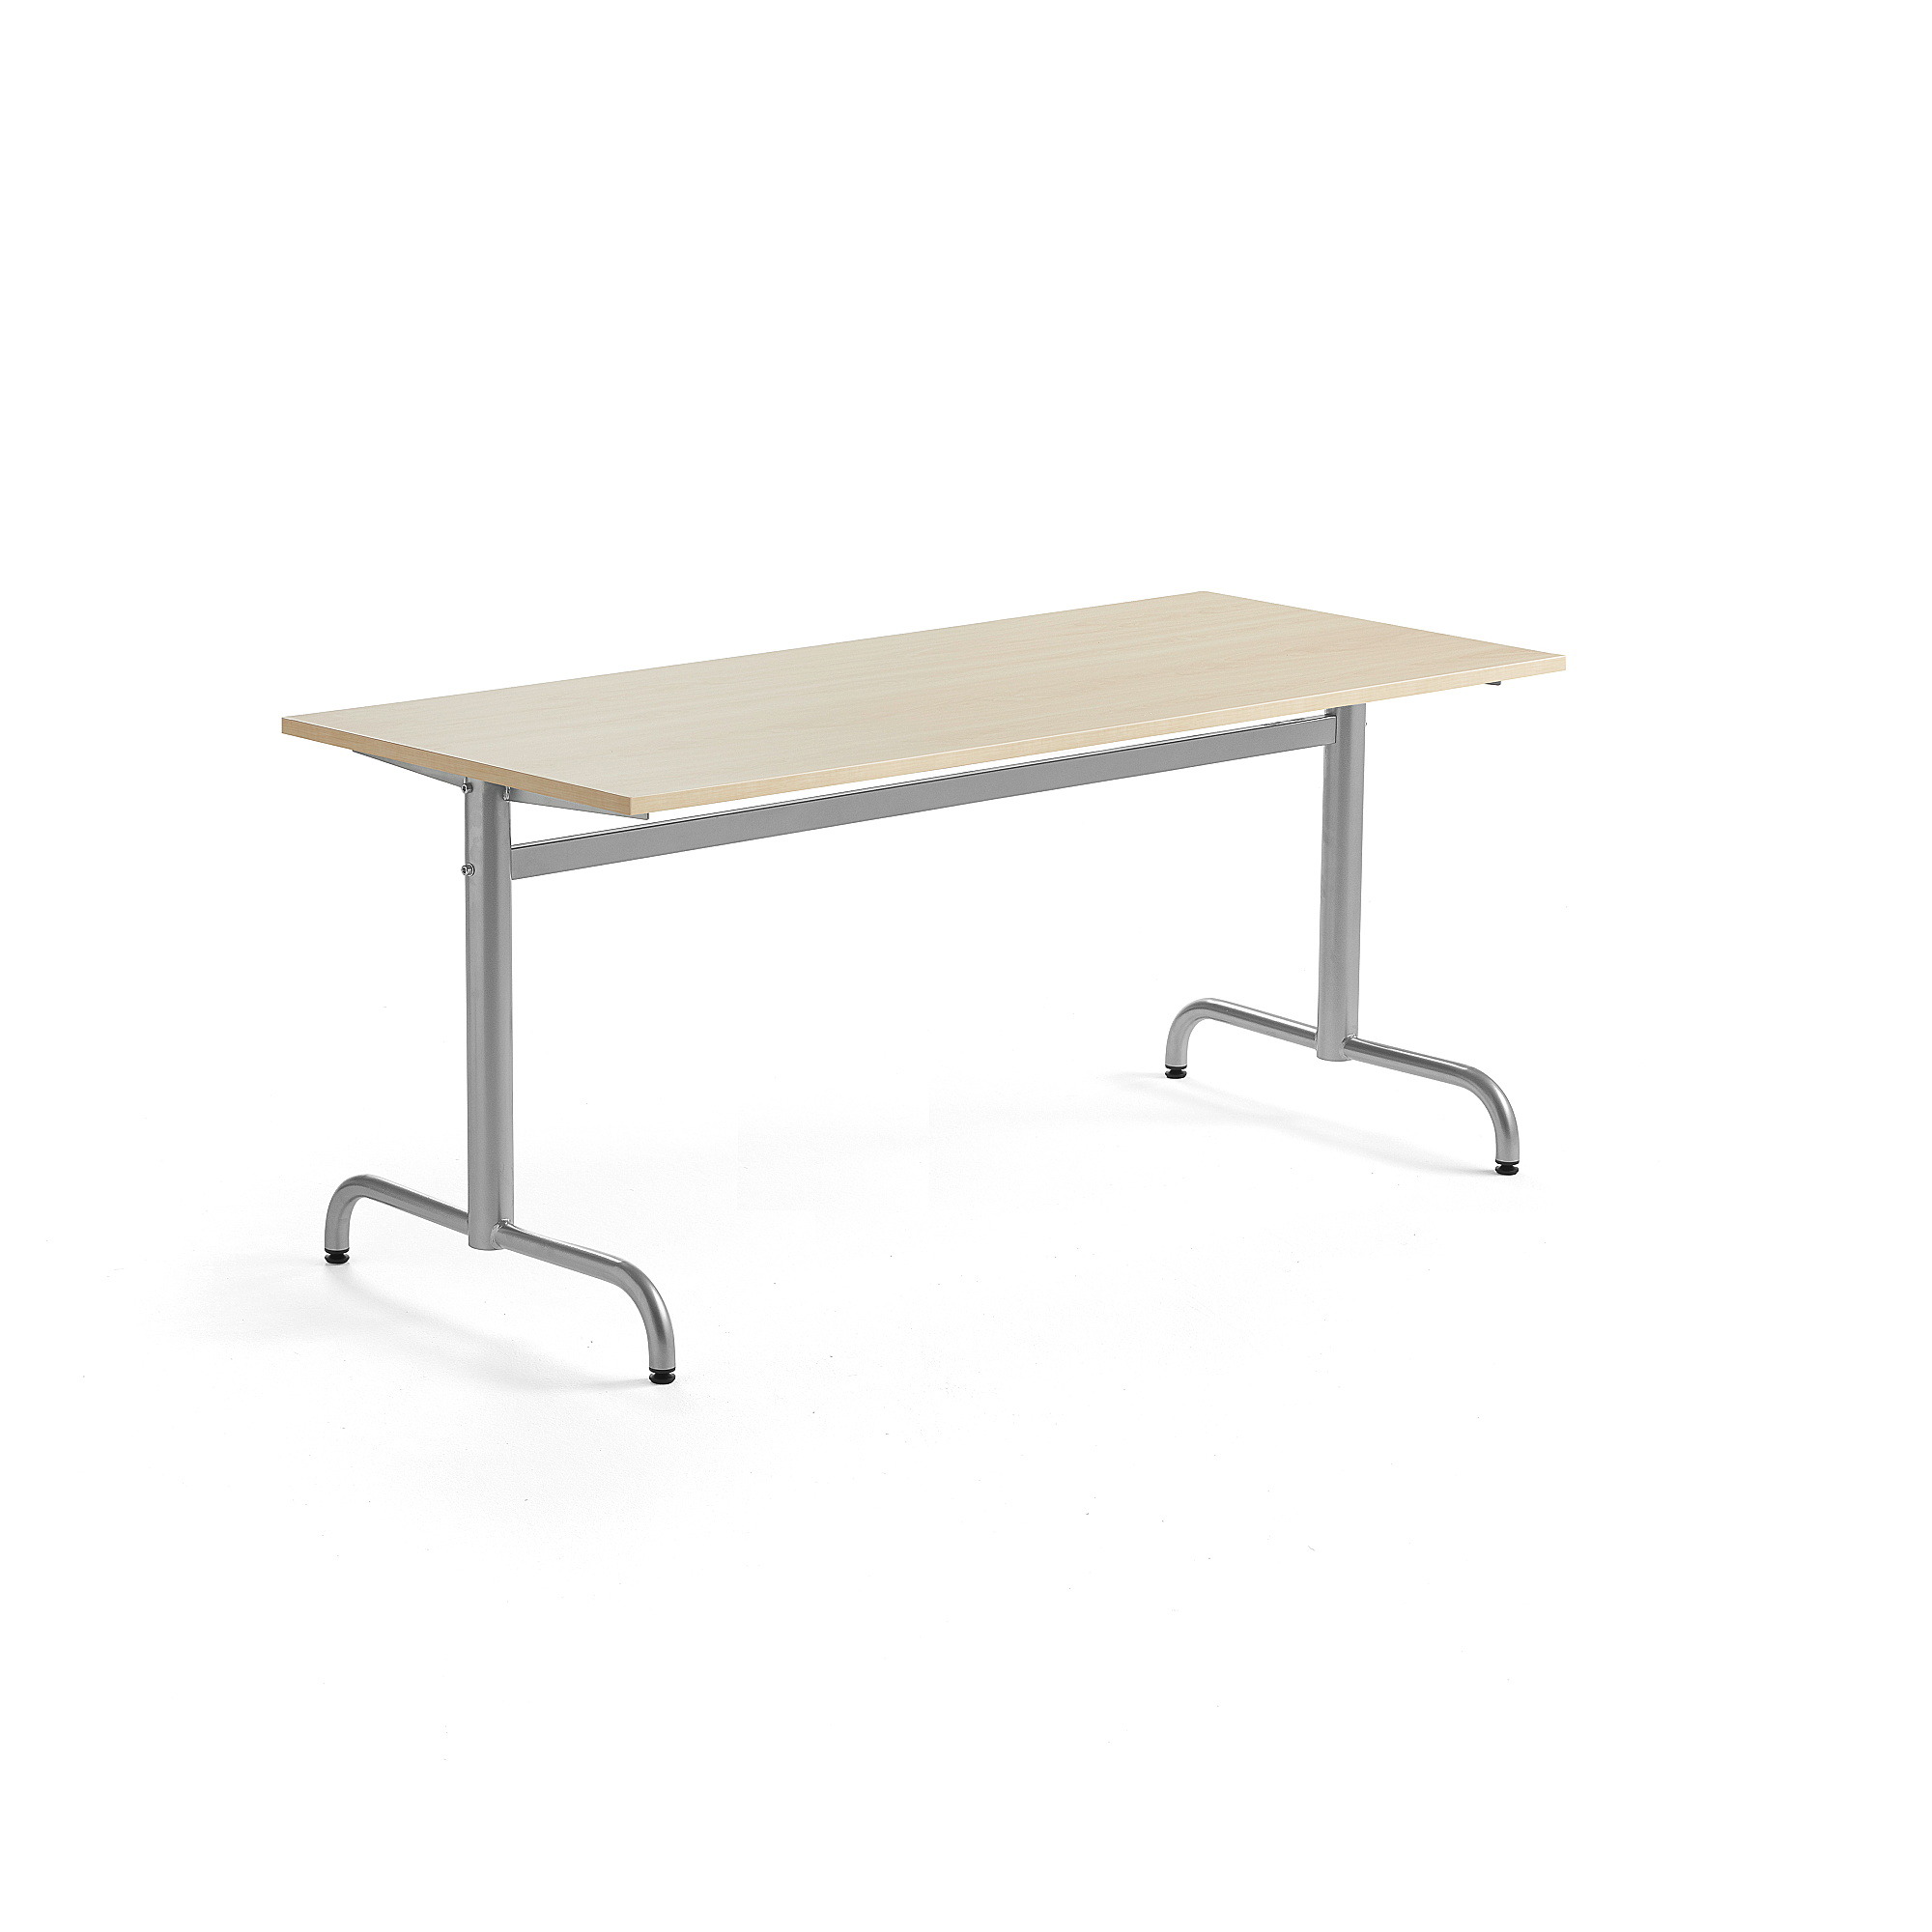 Stůl PLURAL, 1600x700x600 mm, HPL deska, bříza, stříbrná